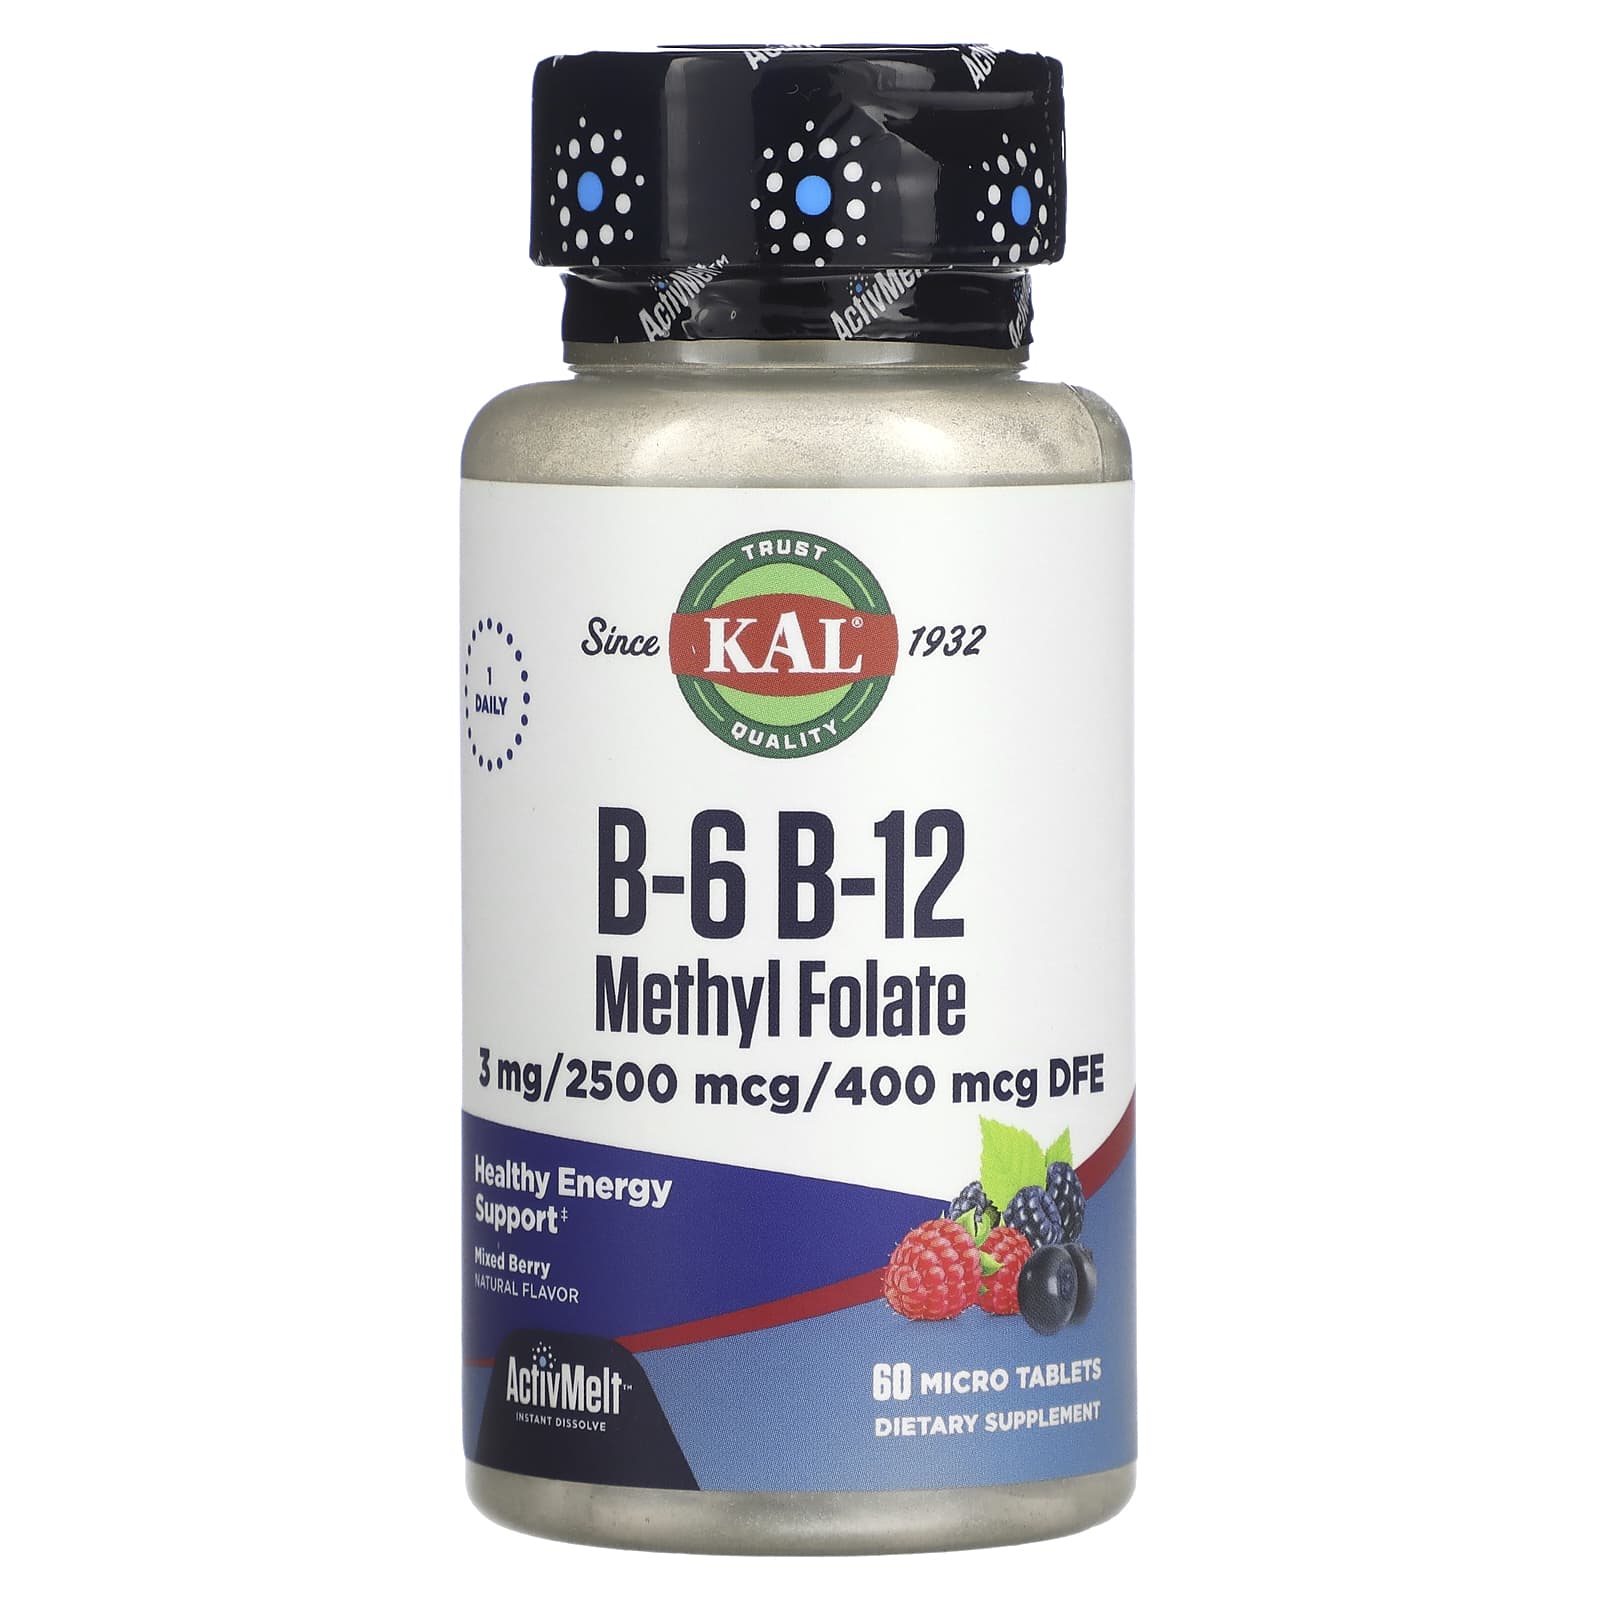 Kal B-6 B-12 Methyl Folate, Mixed Berry, 3 Mg / 2500 Mcg / 400 Mcg, 60 Micro Tablets